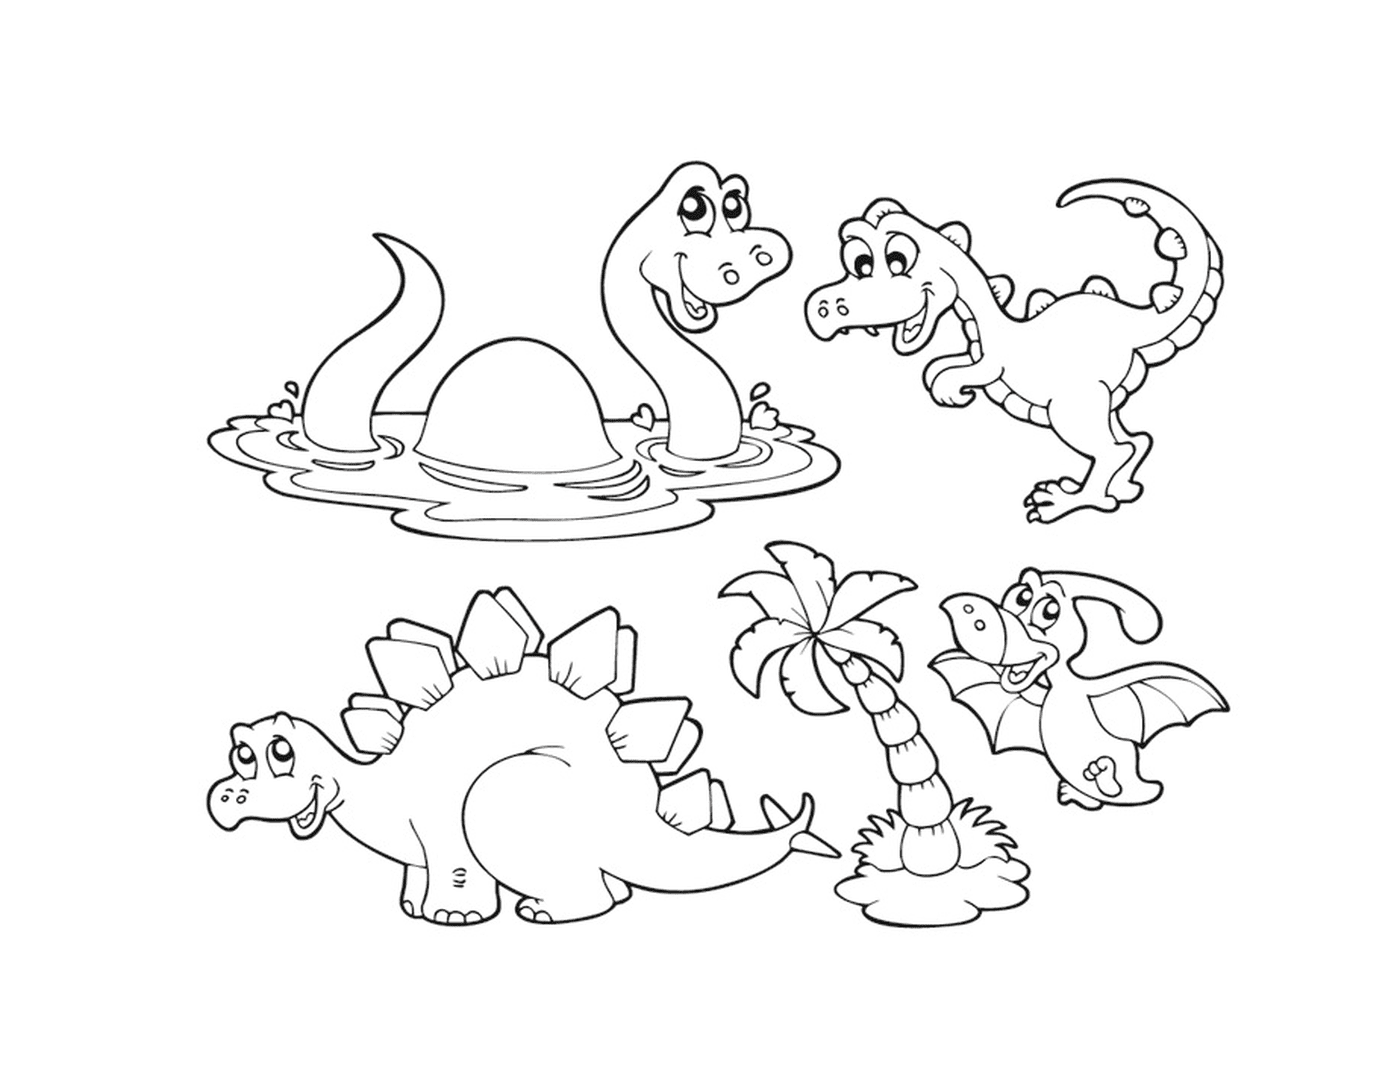  Un gruppo di dinosauri seduti in acqua 